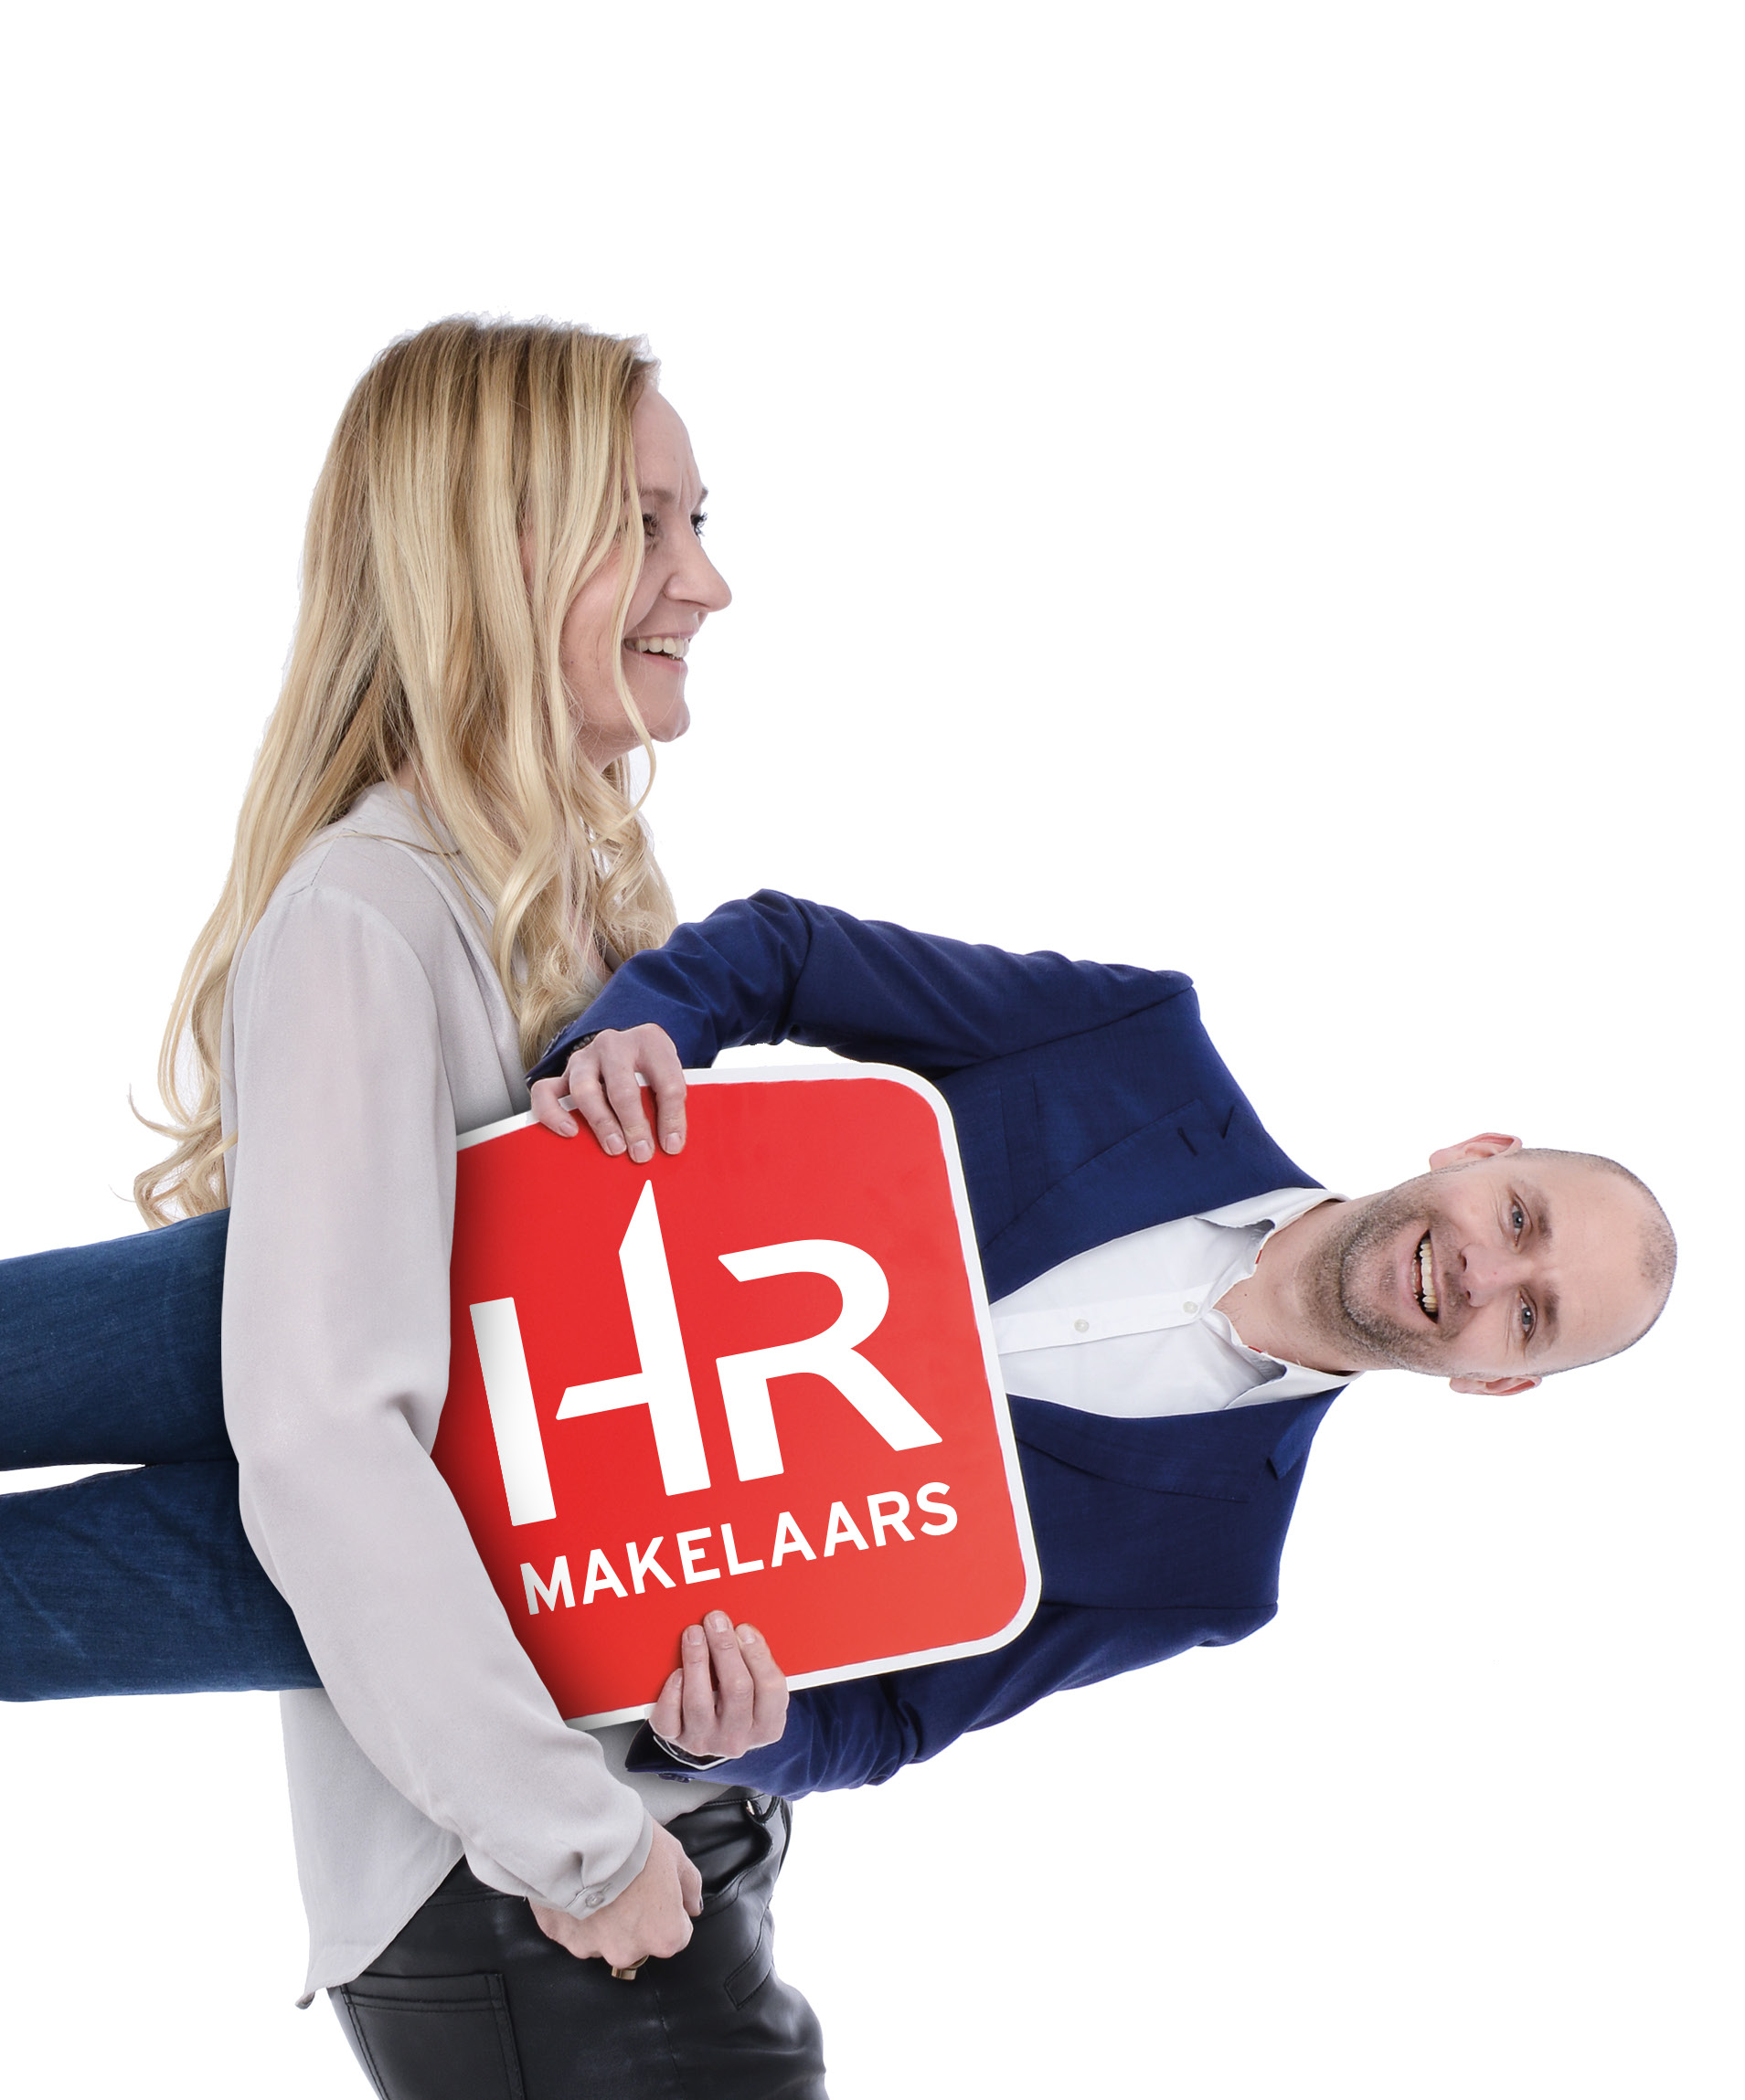 Neem je eigen HR aankoopmakelaar mee! Samen zorgen we voor een verantwoorde aankoop die je meer oplevert dan dat het inhuren van een aankoopmakelaar kost.